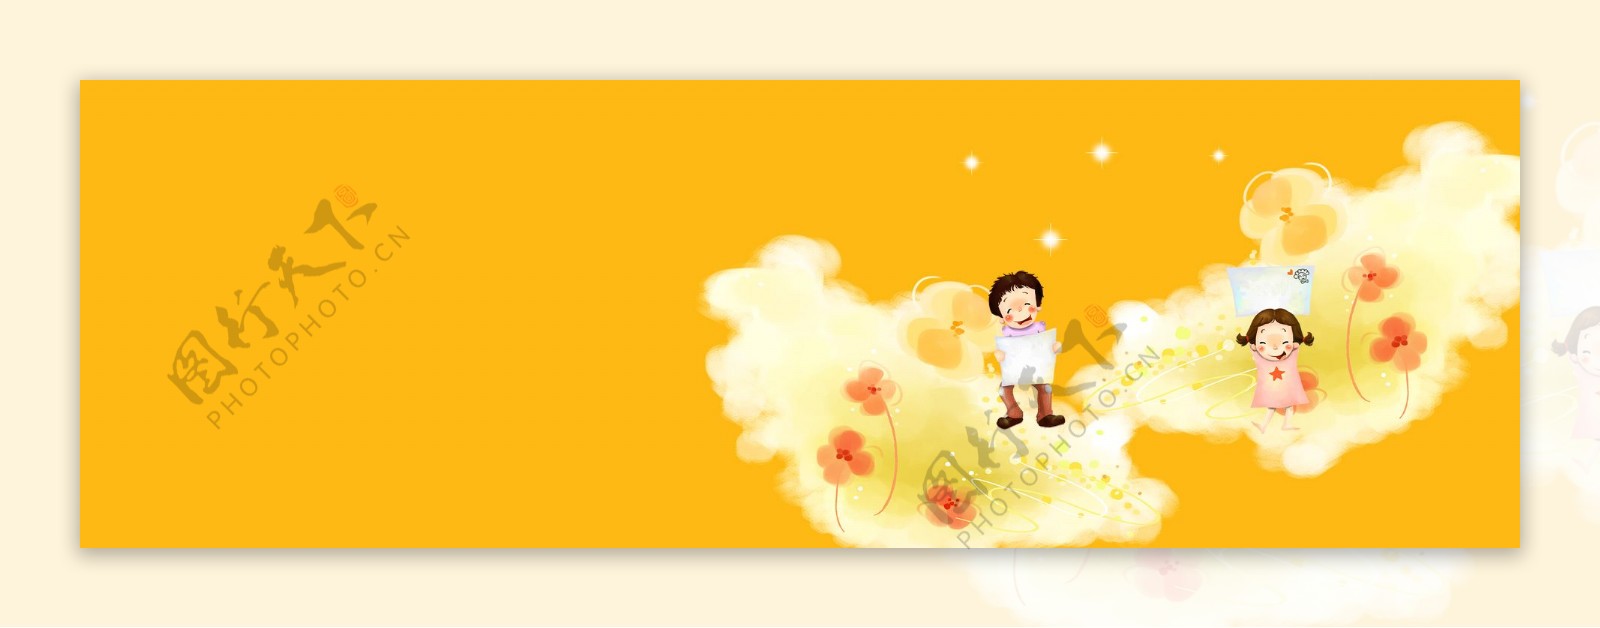 黄色卡通小人背景banner